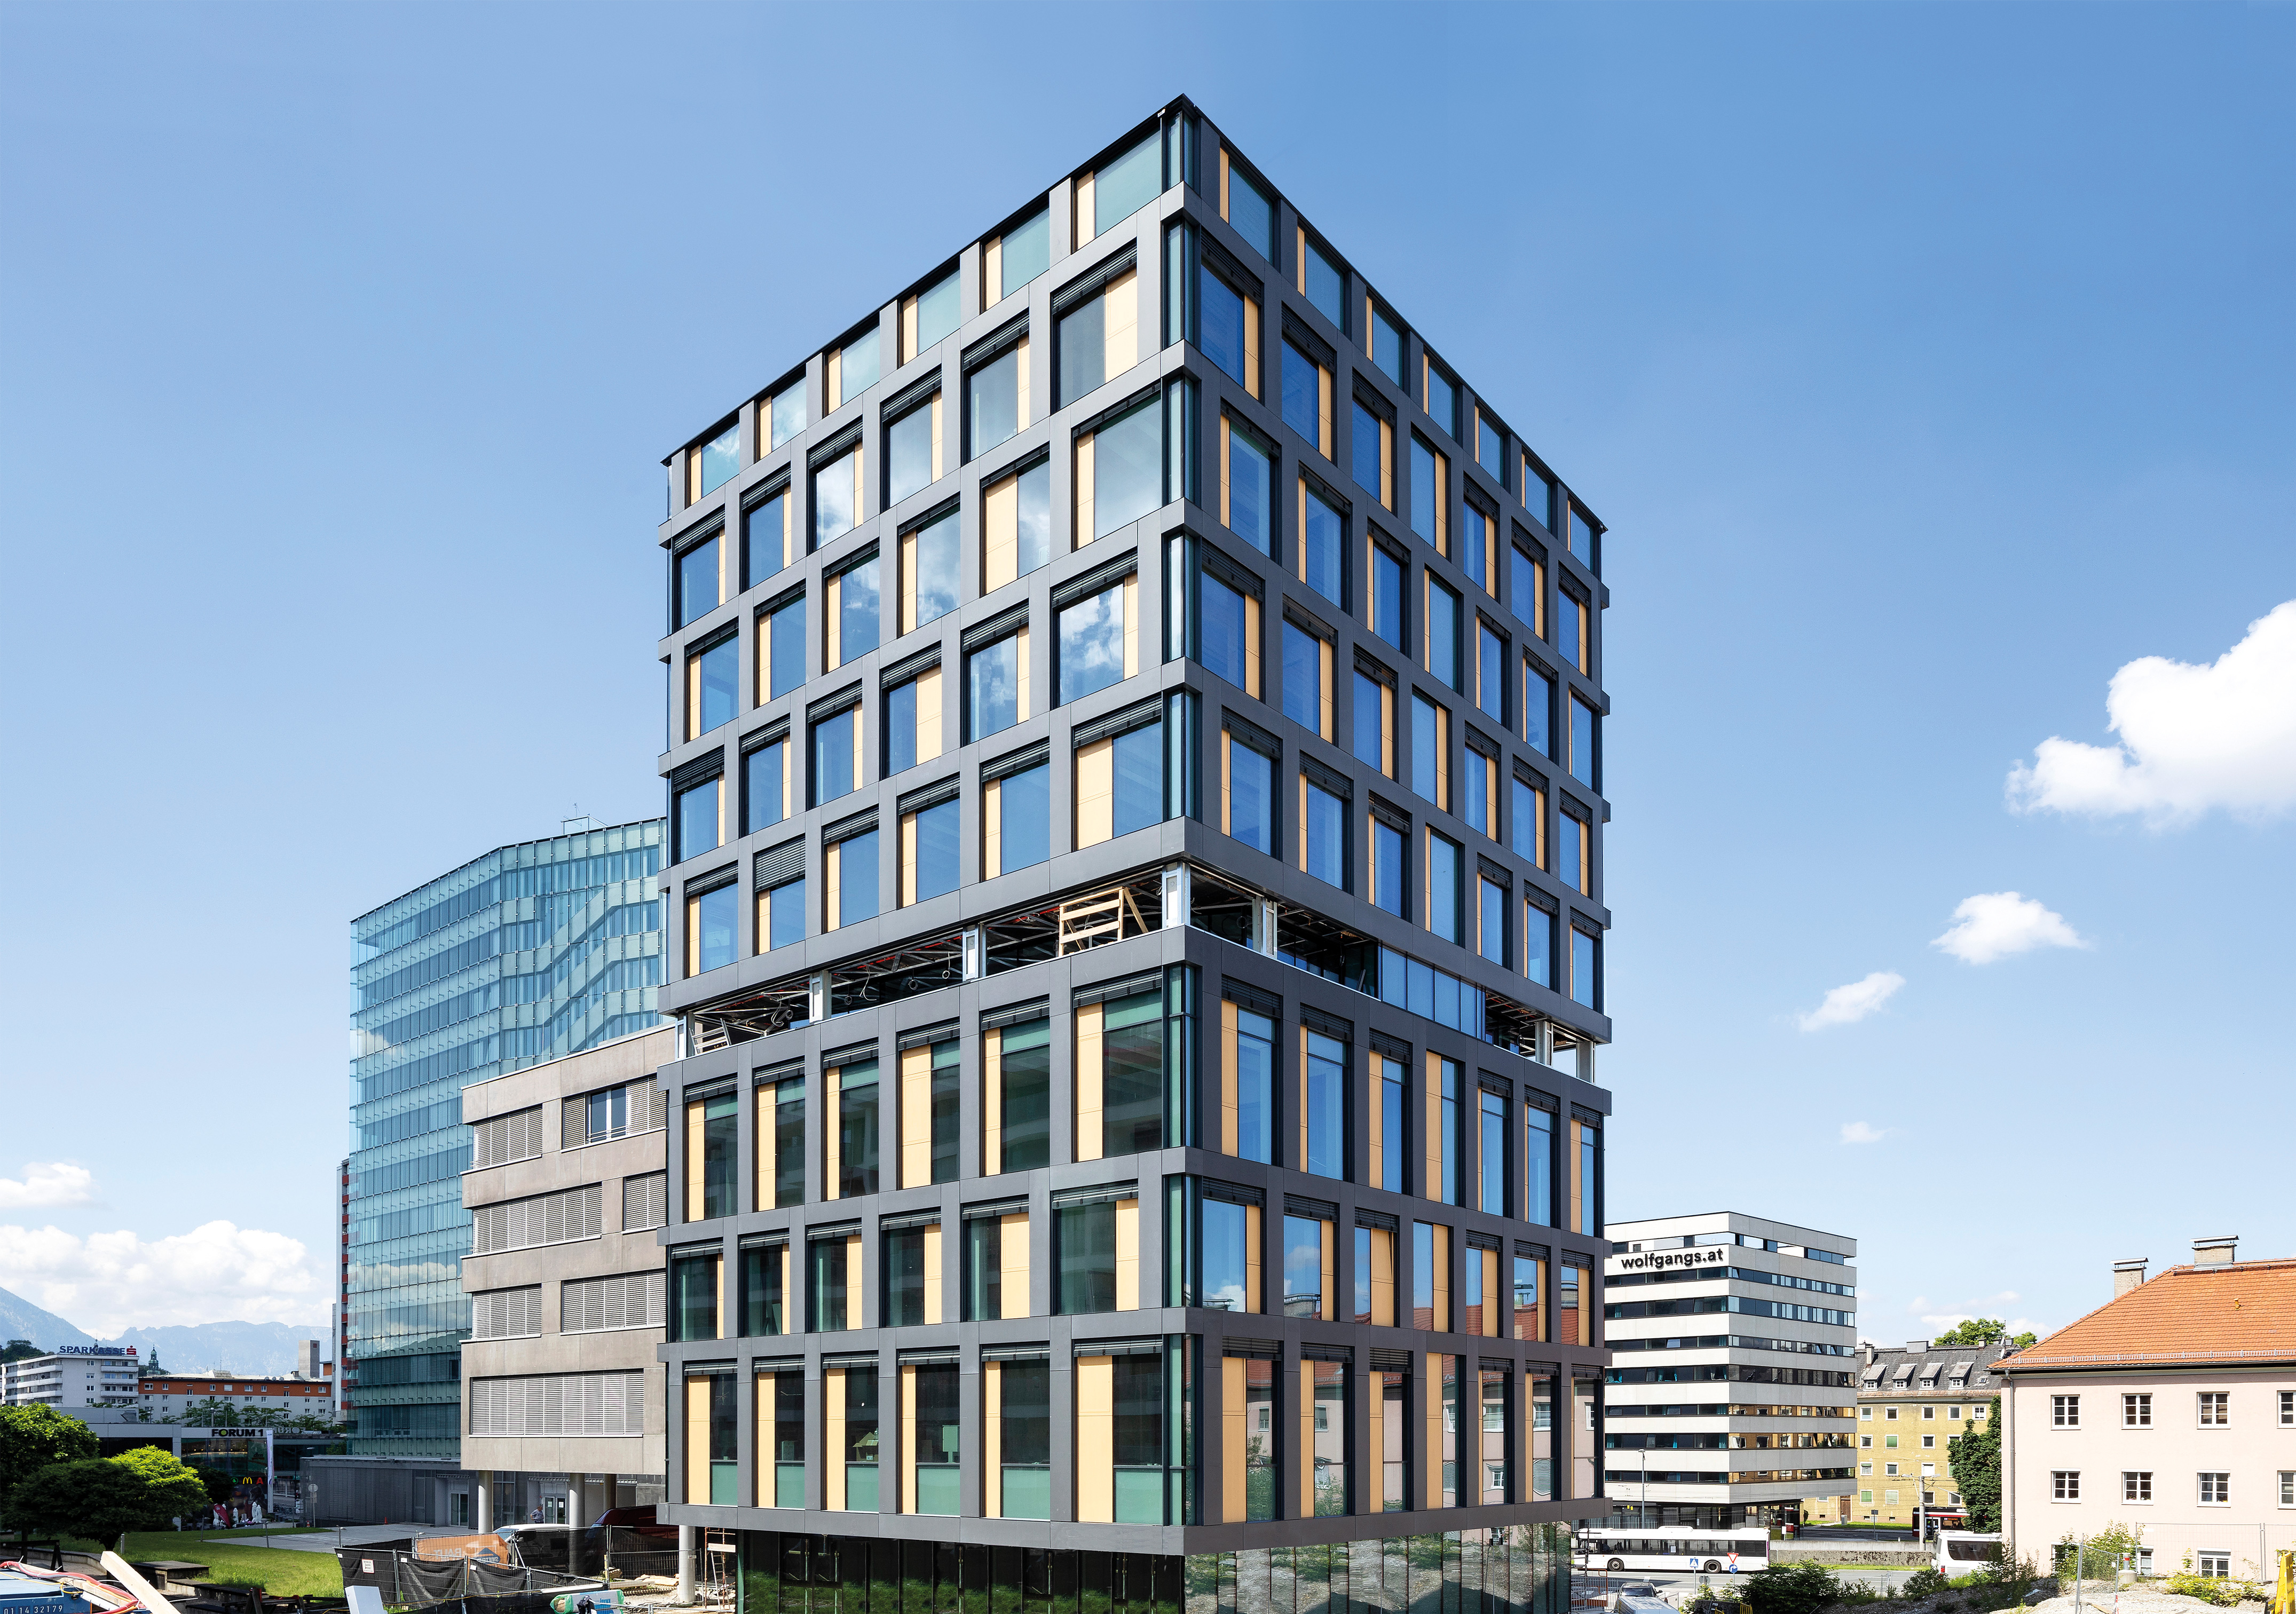 Bürogebäude der österreichischen Gesundheitskasse in Holz-/Hybridbauweise, Salzburg - Costruzione edilizia